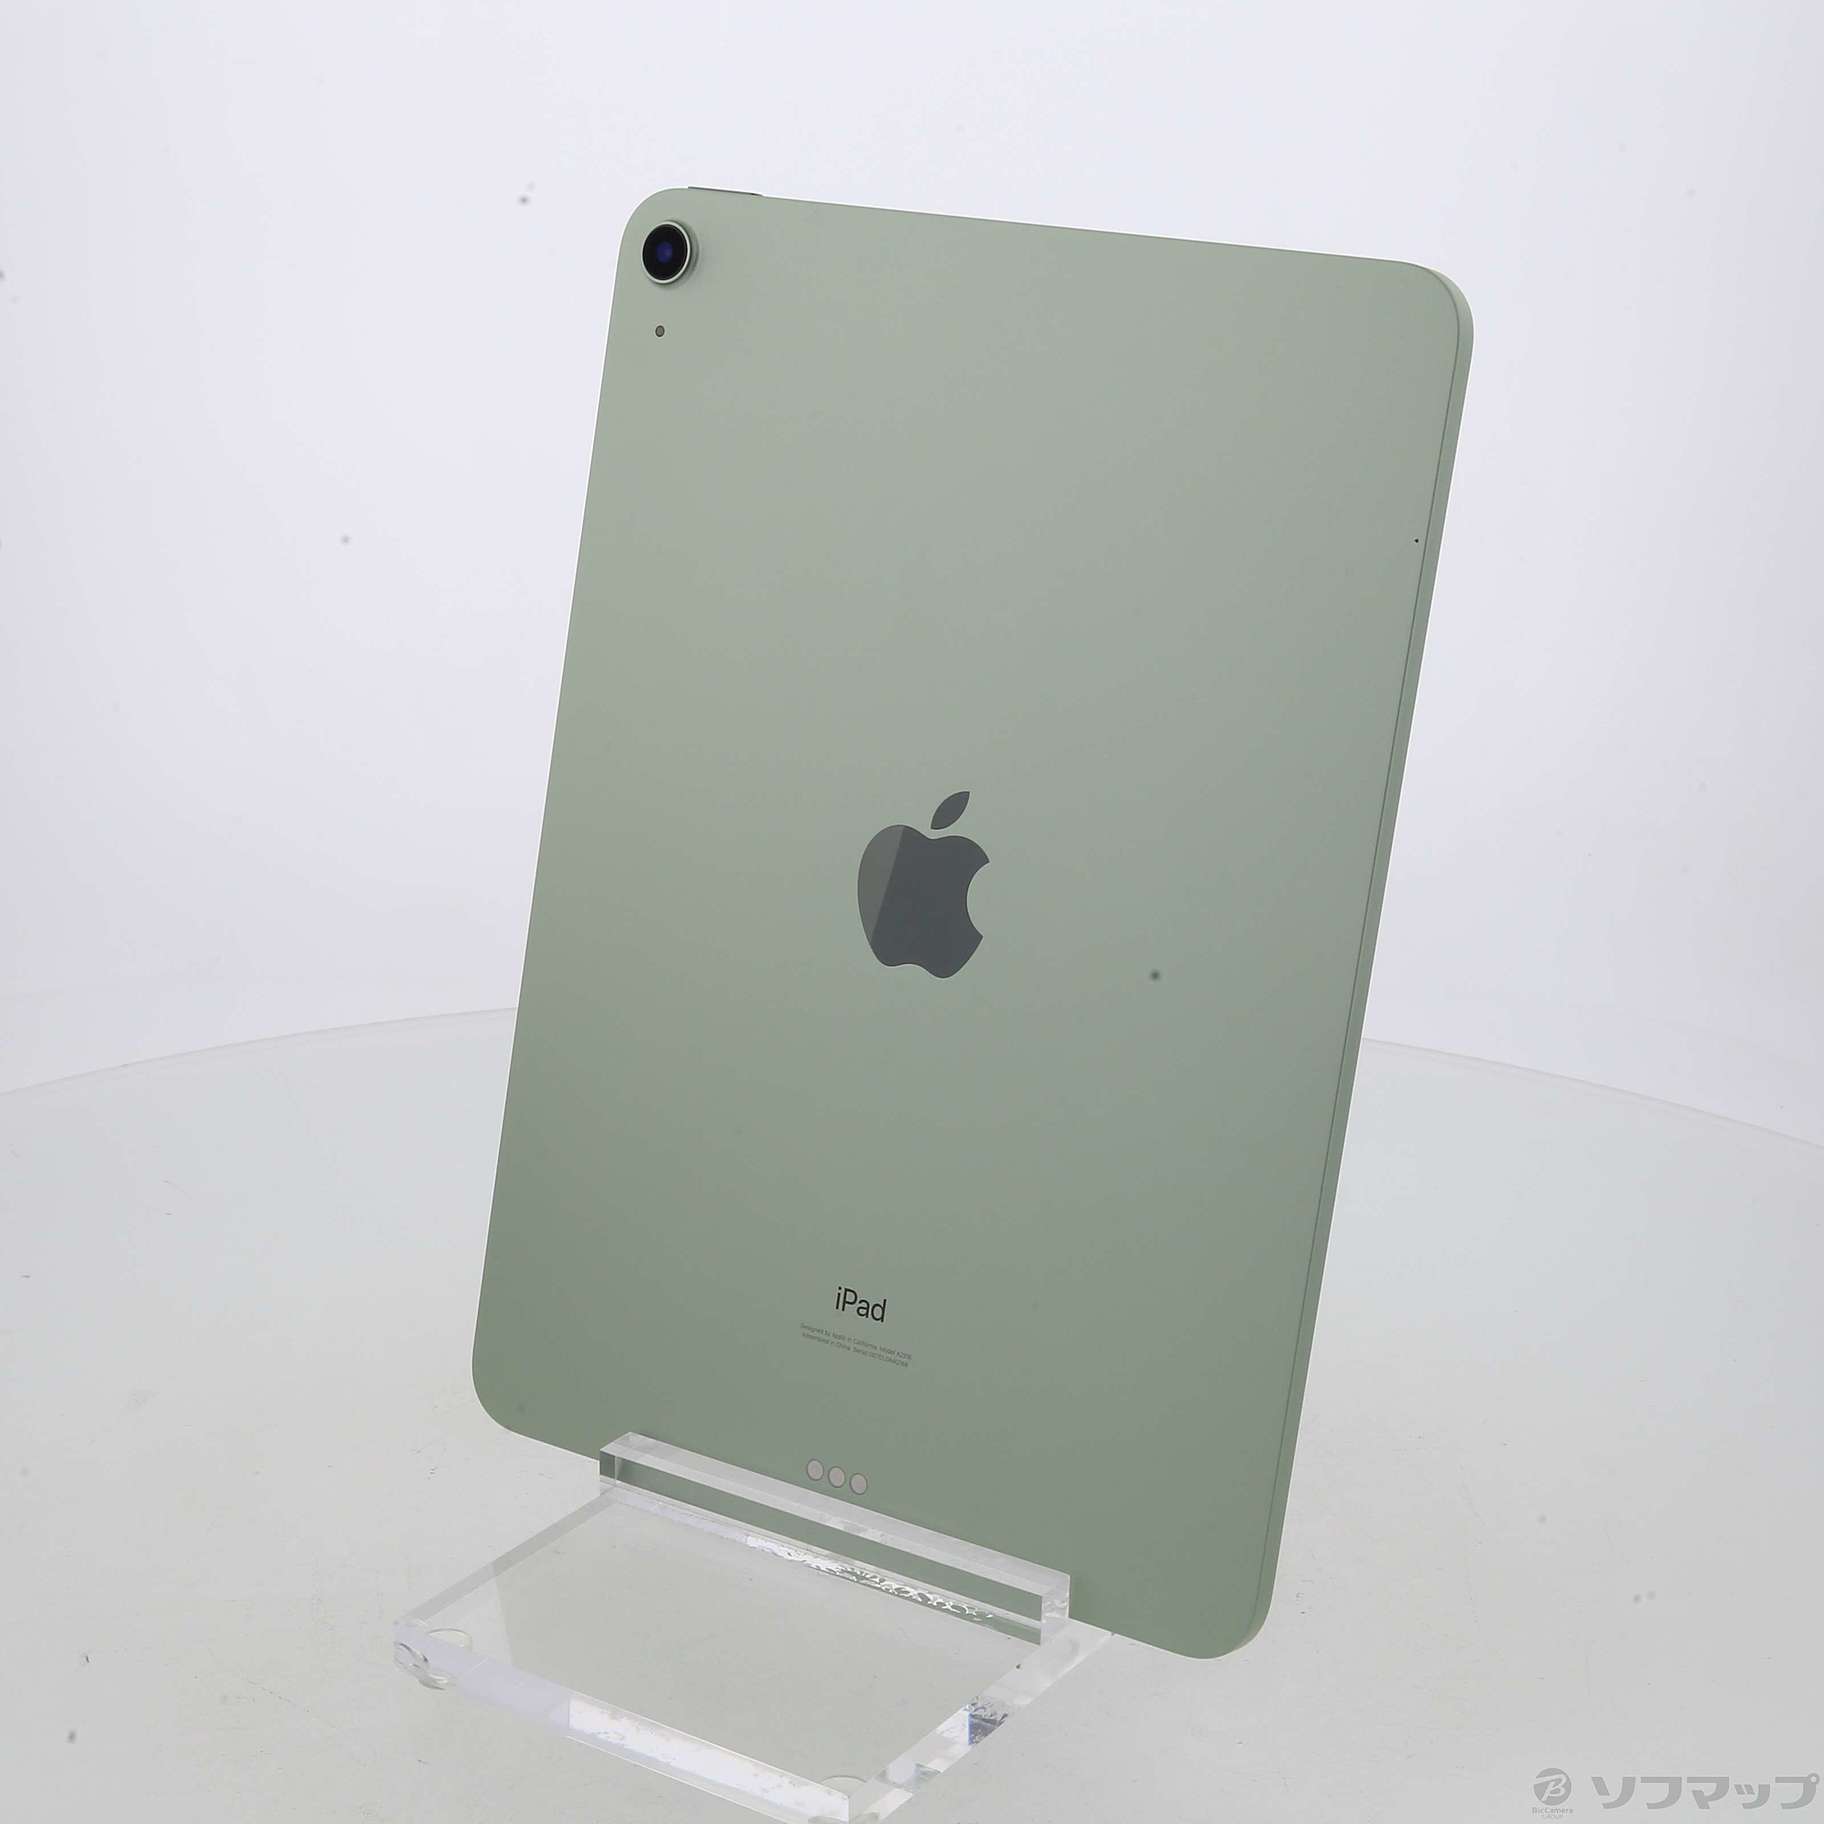 オンライン店  グリーン WiFi 64GB Air4 【新品未使用】iPad タブレット